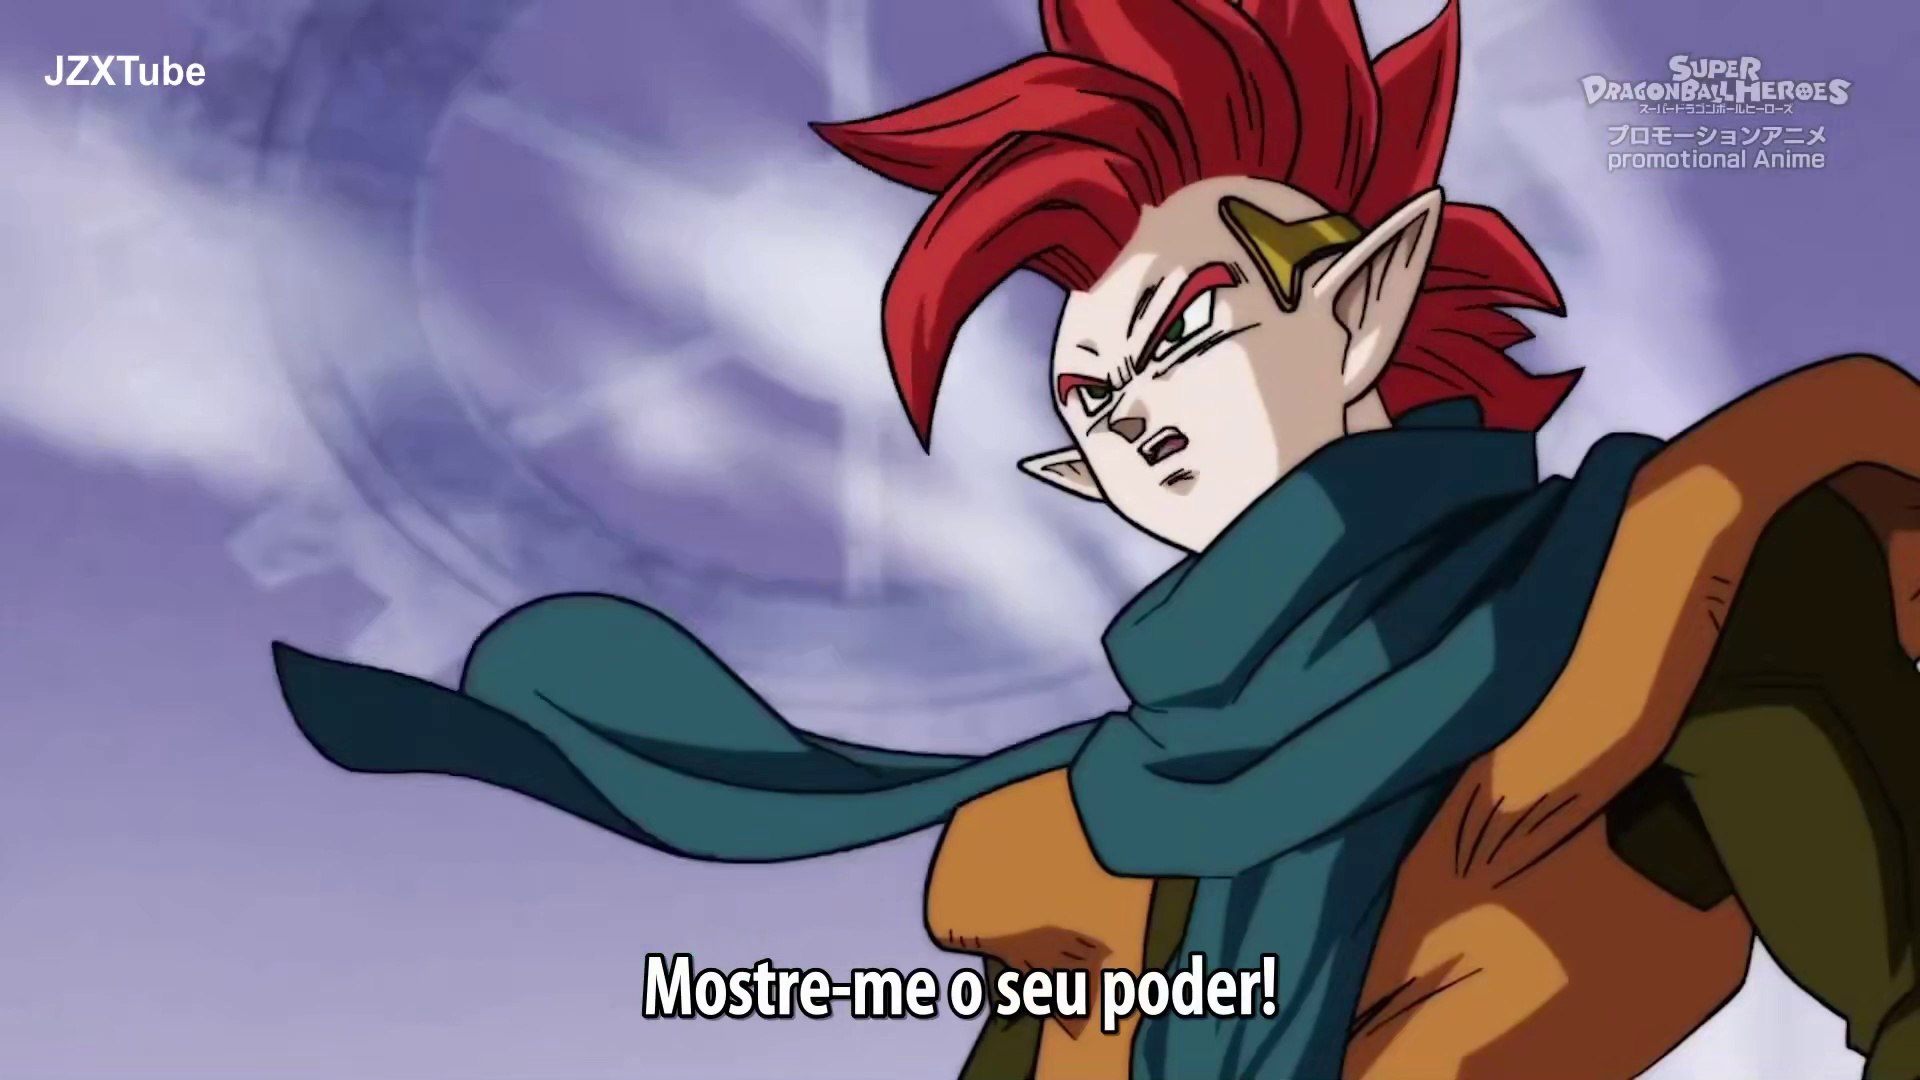 Dragon Ball Heroes Episodio 41 (Completo) - O SEGUNDO TORNEIO DO PODER  COMEÇA! Em português 